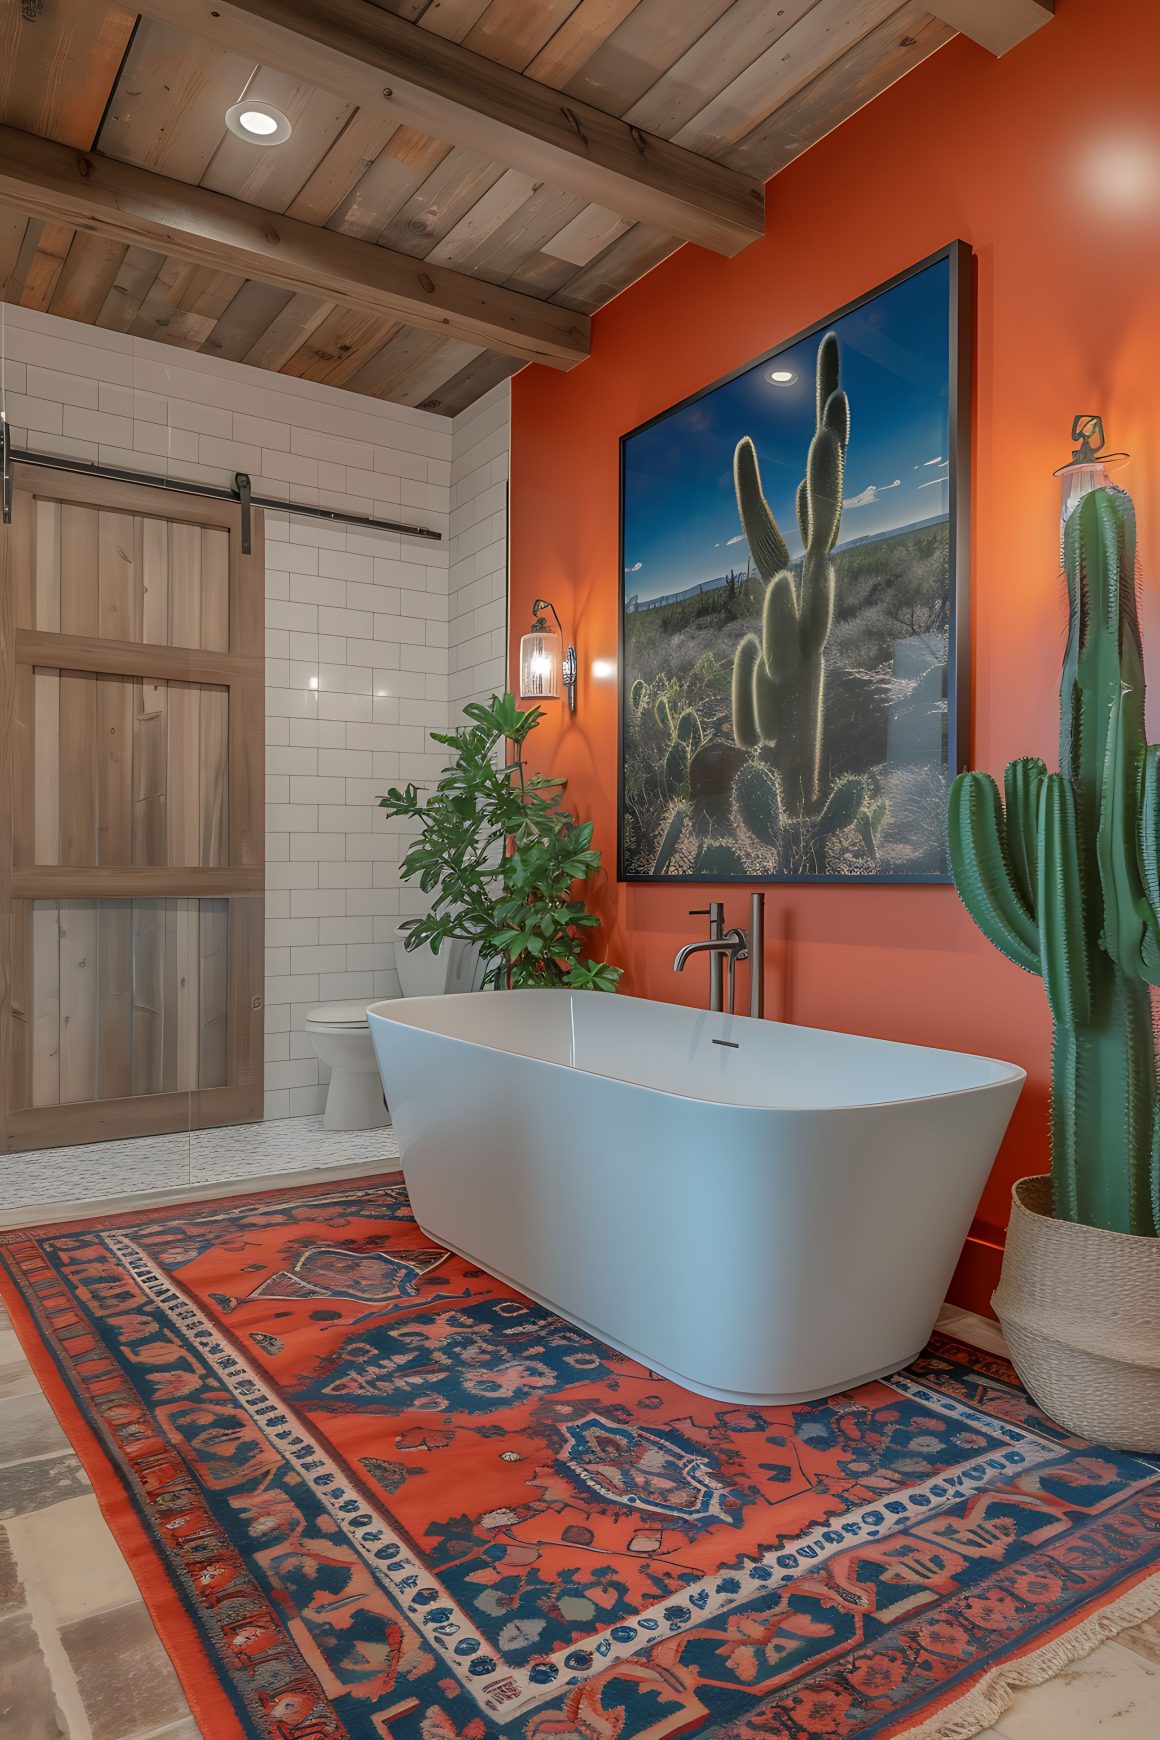 une salle de bains exotique avec une baignoire blanche sur un tapis rouge vibrant, des plantes vertes et un mur orange décoré d'une image de cactus